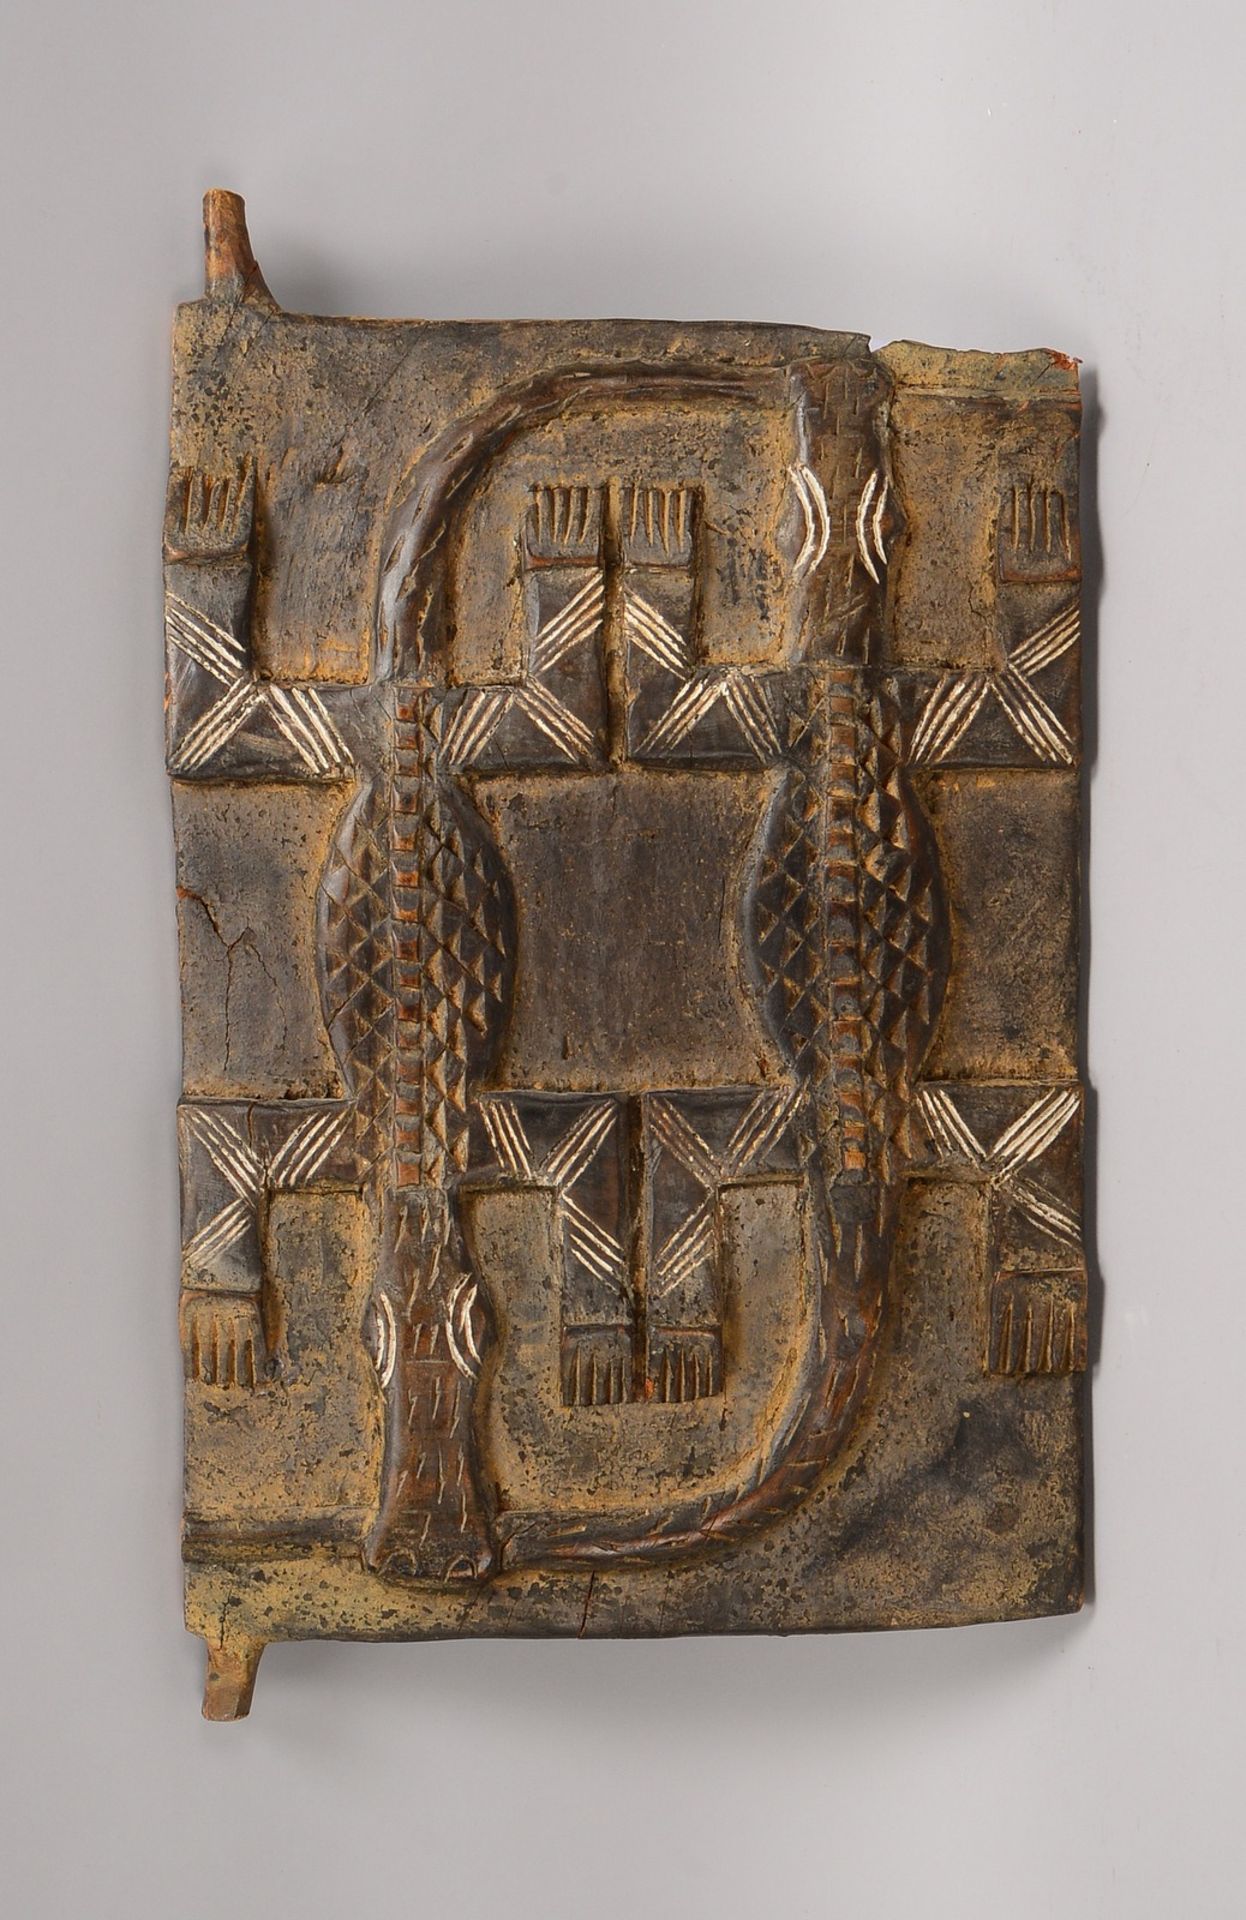 Getreidespeicher-Tür, Holz mit geschn. Relief ('Zwei Krokodile'); Maße 49 x 34 cm